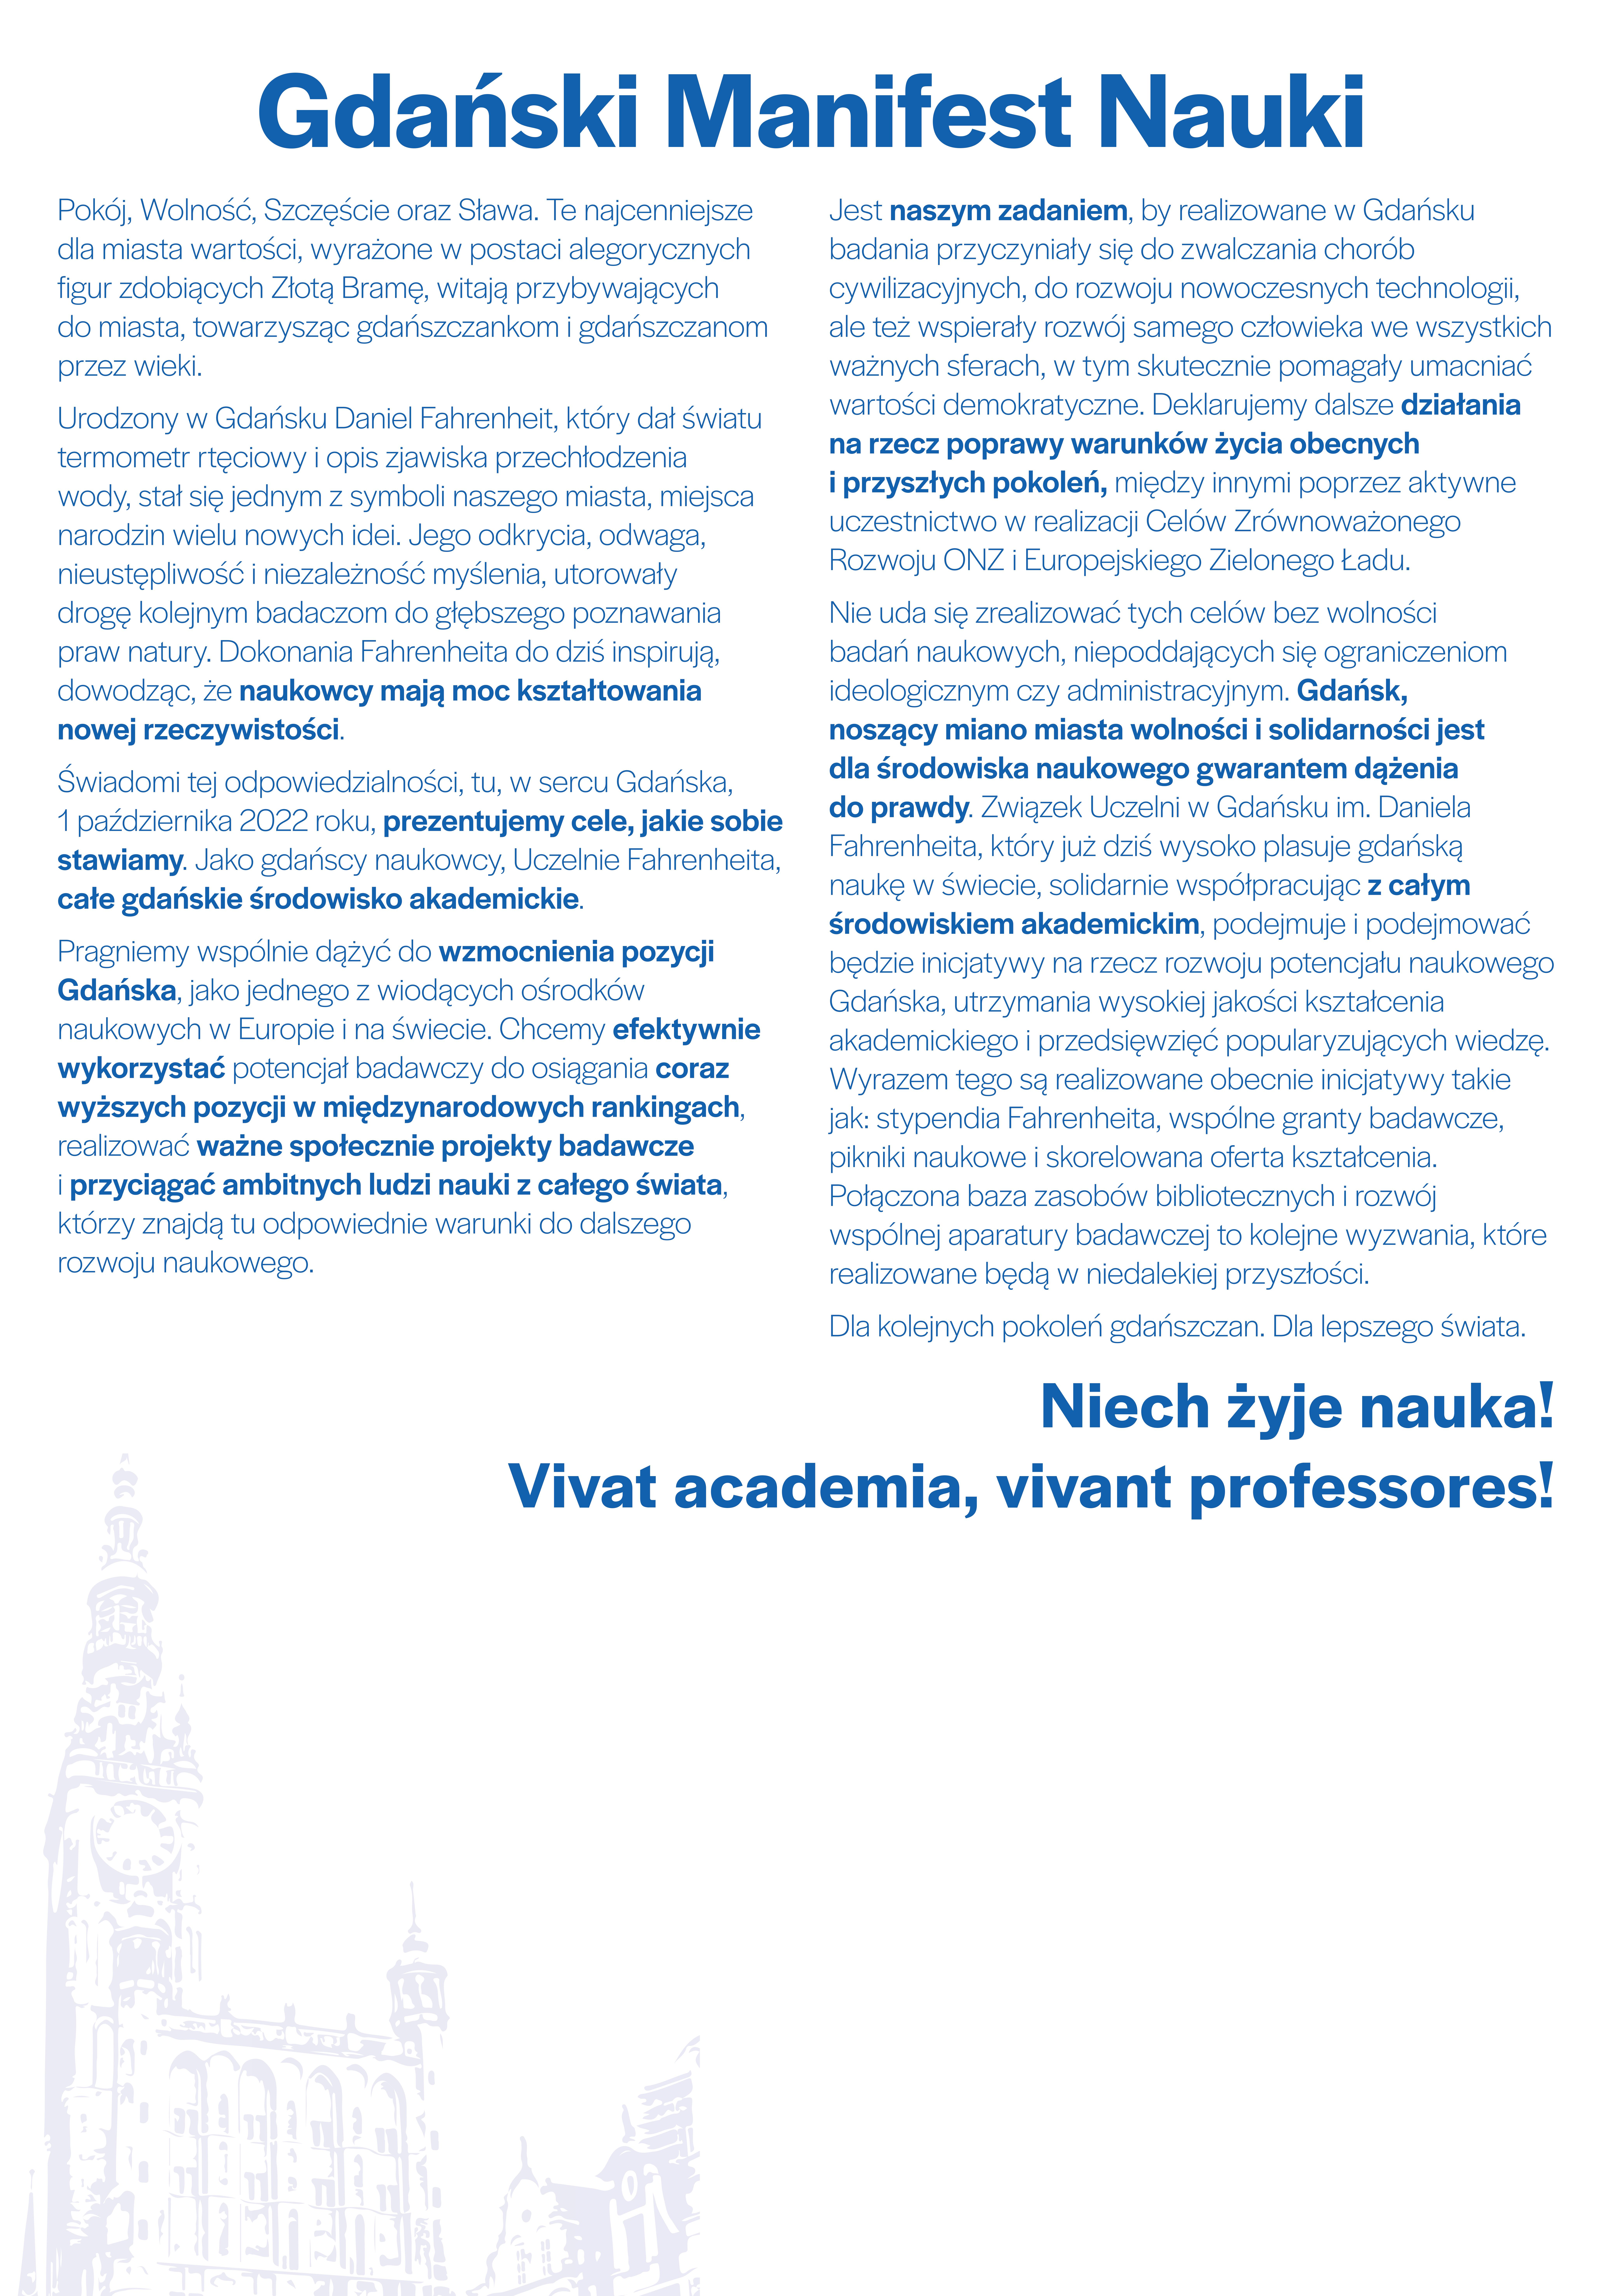 Grafika z treścią Gdańskiego Manifestu Nauki podpisanego podczas pierwszej parady "Niech żyje nauka!" w 2022 roku